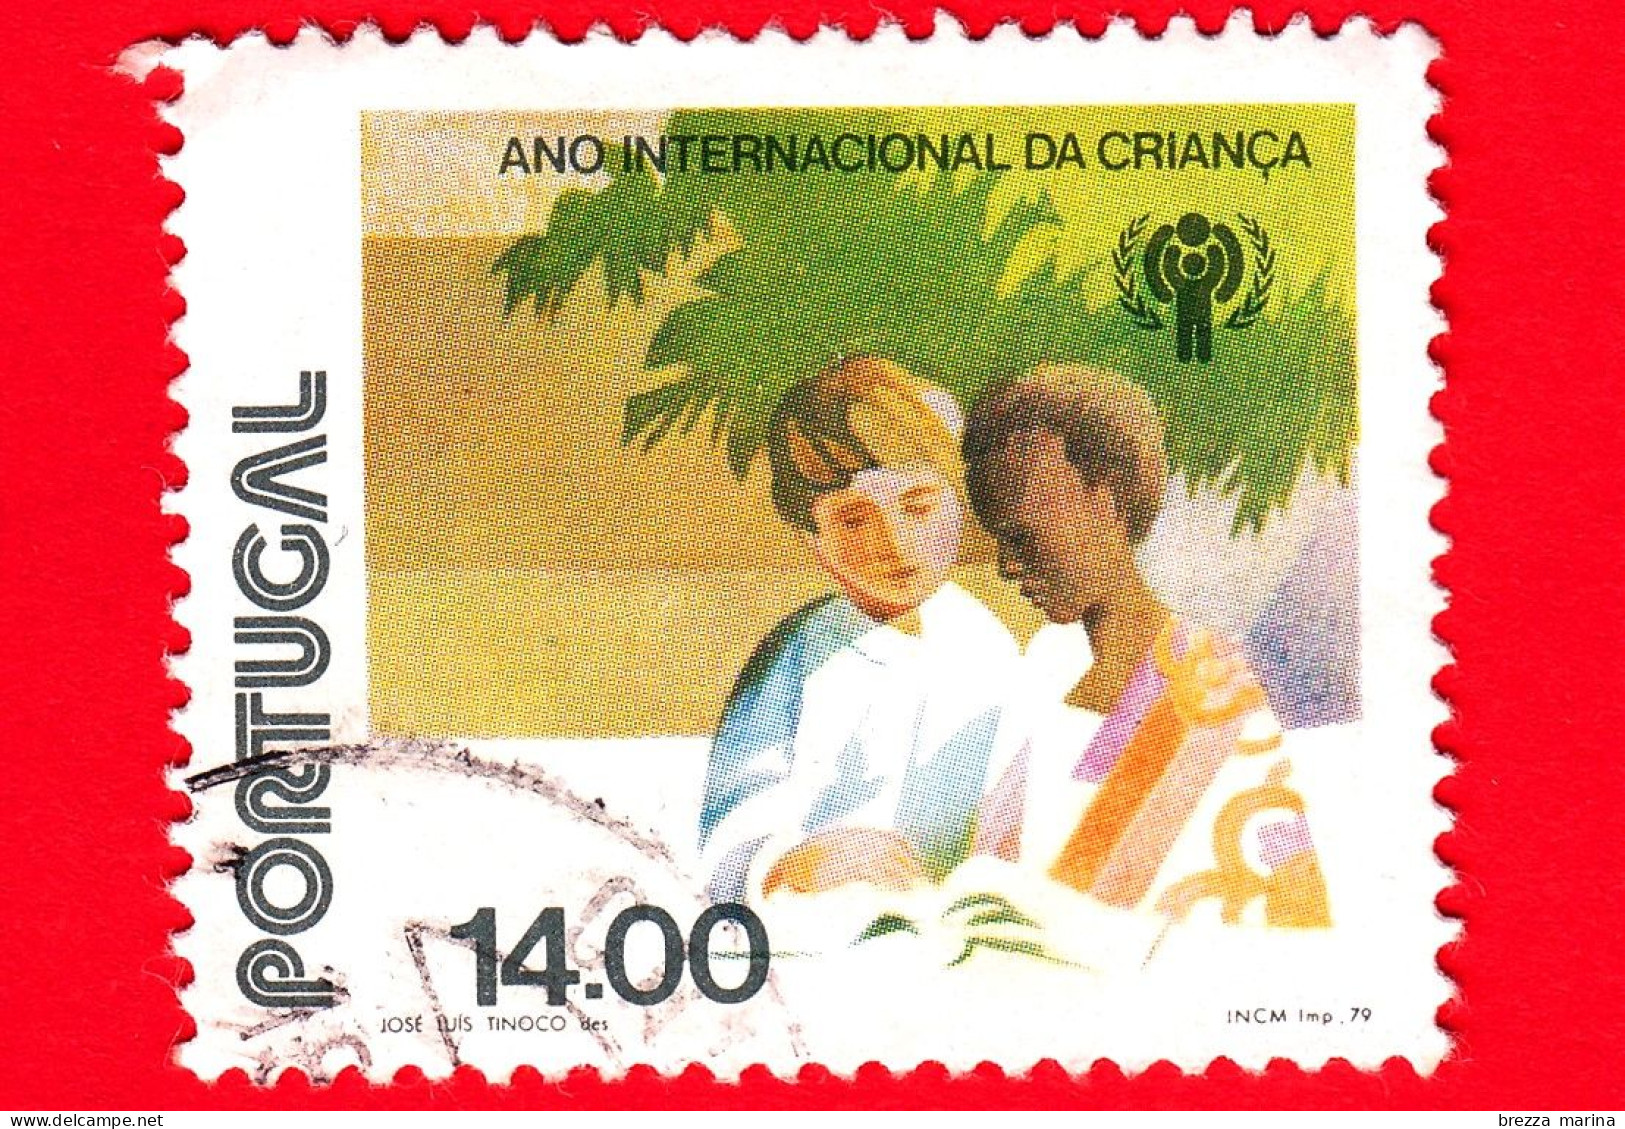 PORTOGALLO - Usato - 1979 - Anno Internazionale Dei Bambini - Ragazzo Bianco E Ragazzo Nero - 14.00 - Usado